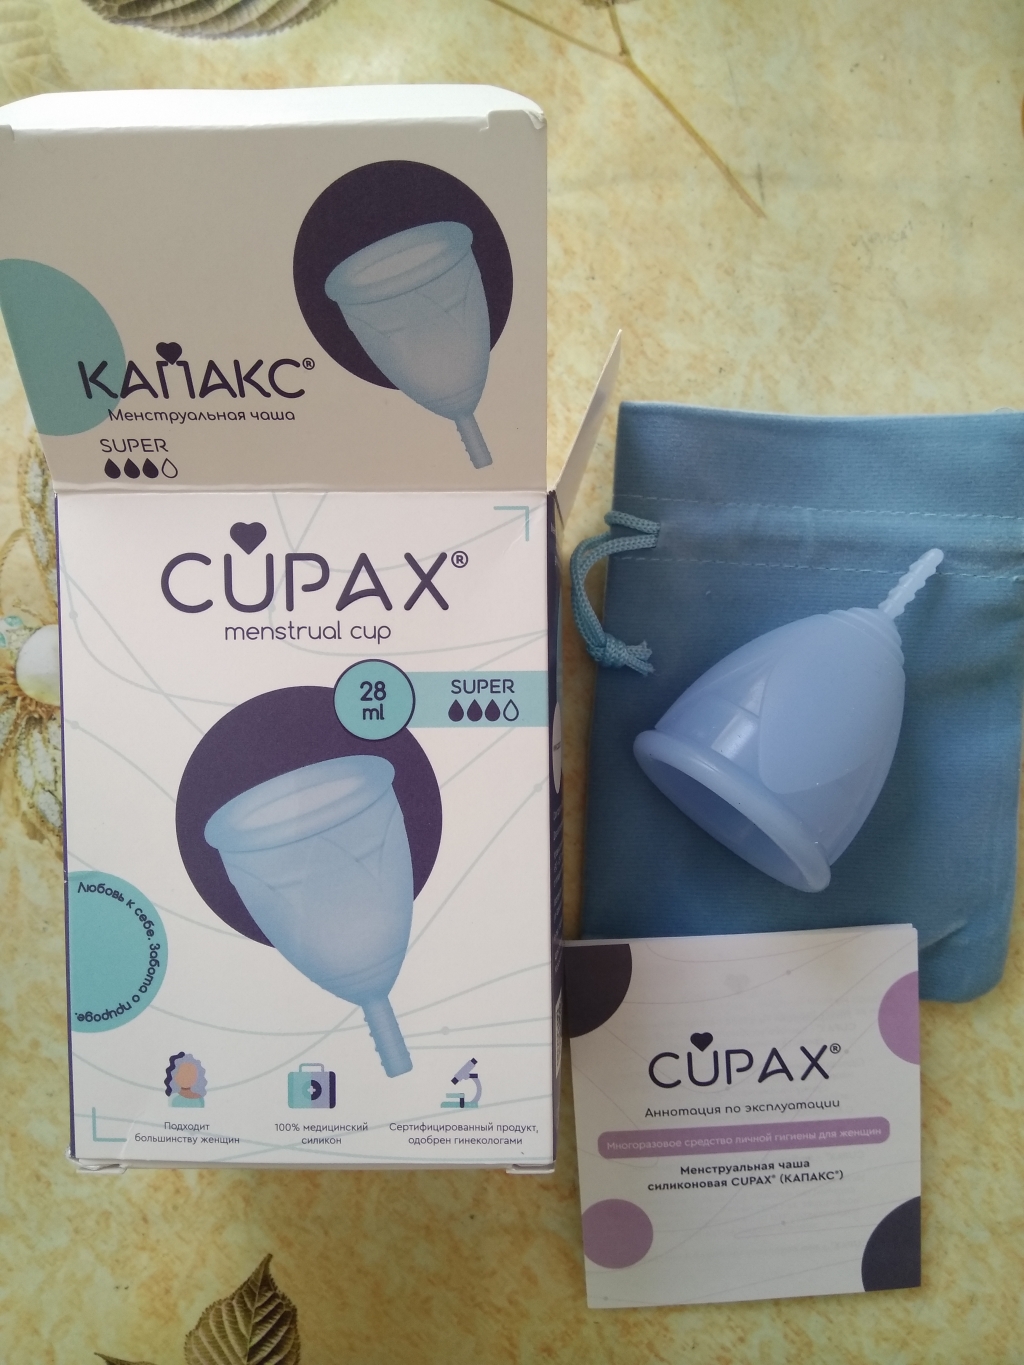 Cupax Менструальная чаша - Гигиенично, экономично и очень удобно)